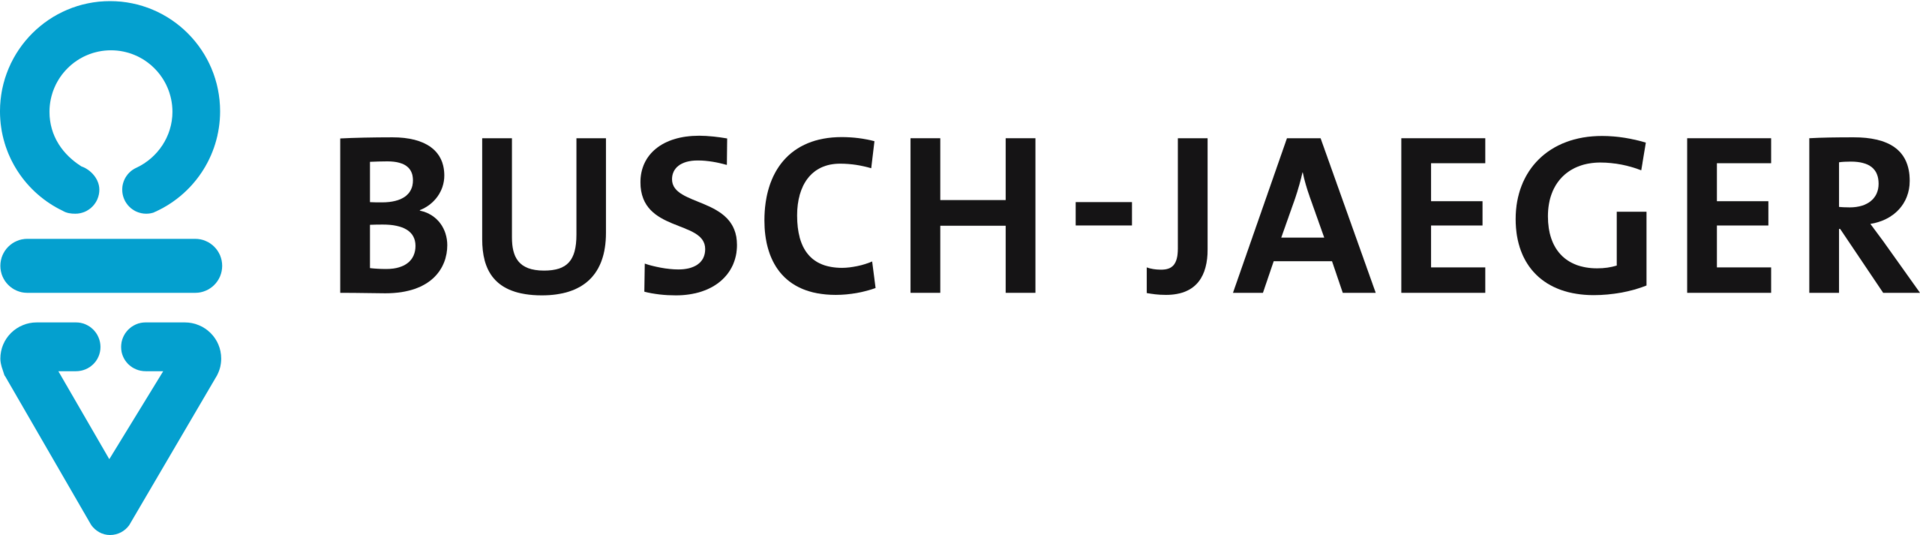 Busch Jaeger